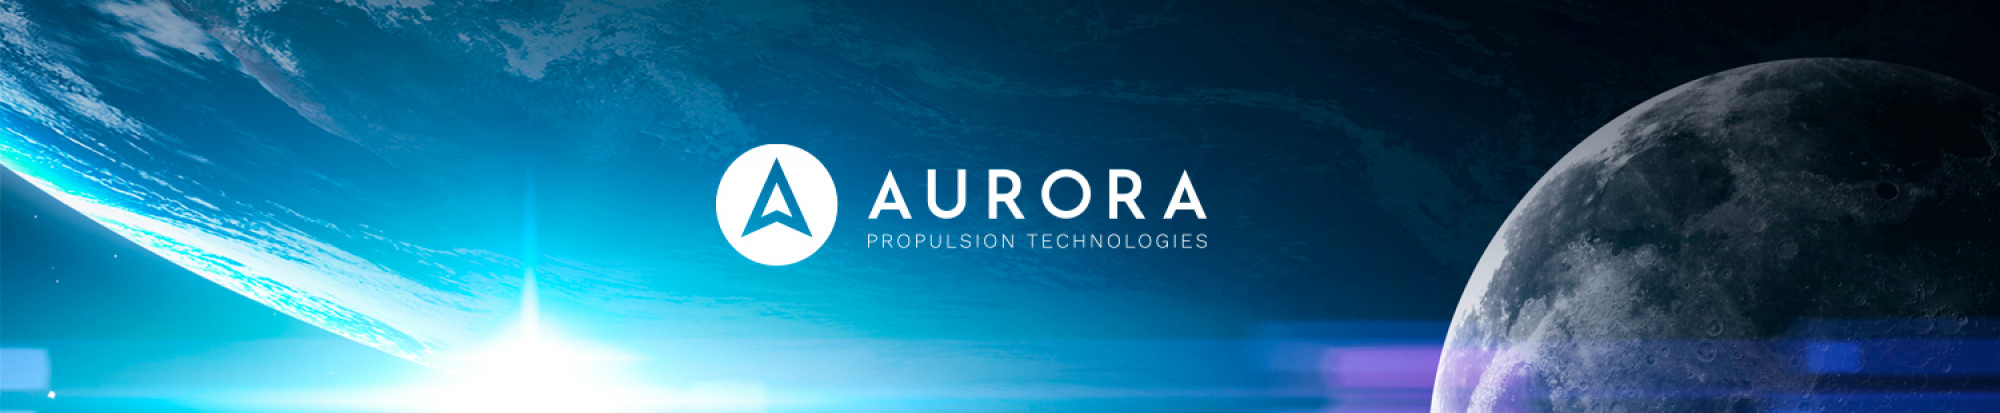 Aurora Propulsion Technologies Oy